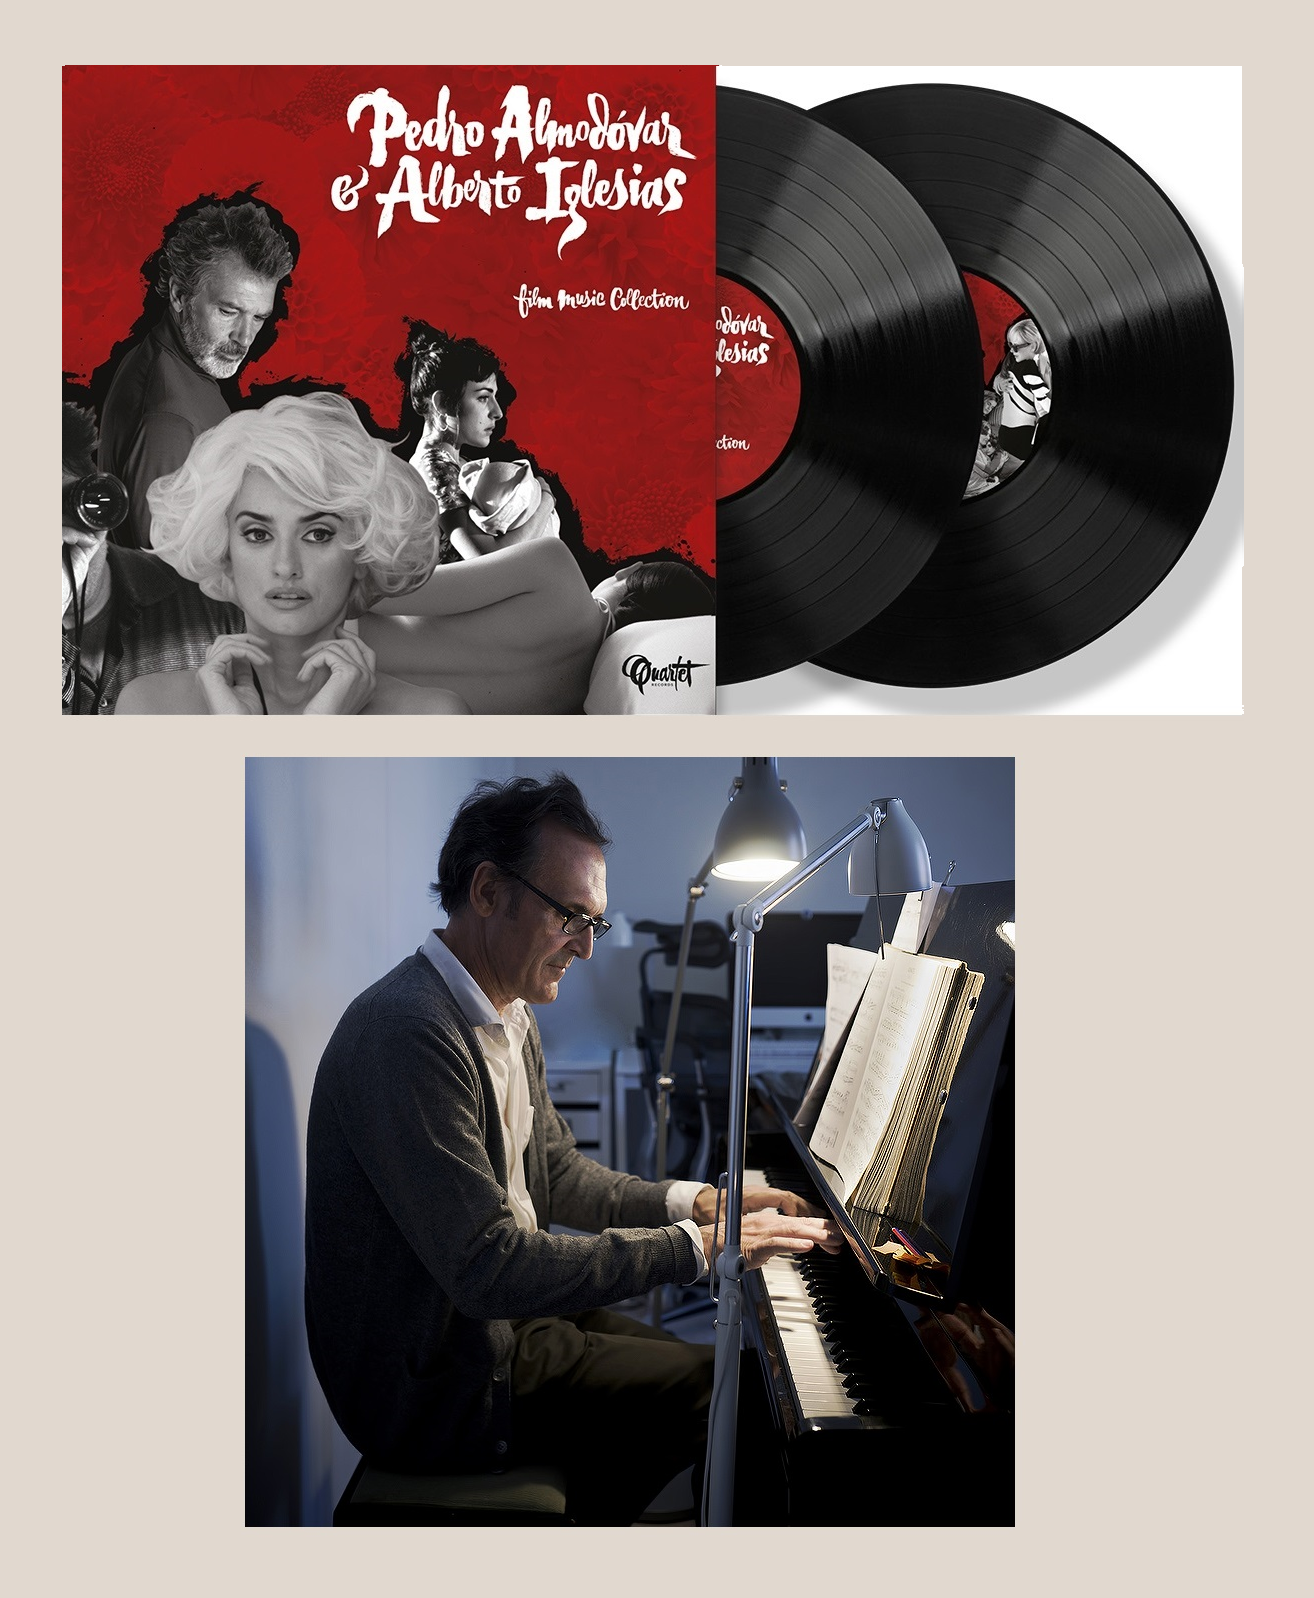 Pedro Almodvar & Alberto Iglesias: Film Music Collection (Double Vinyle)